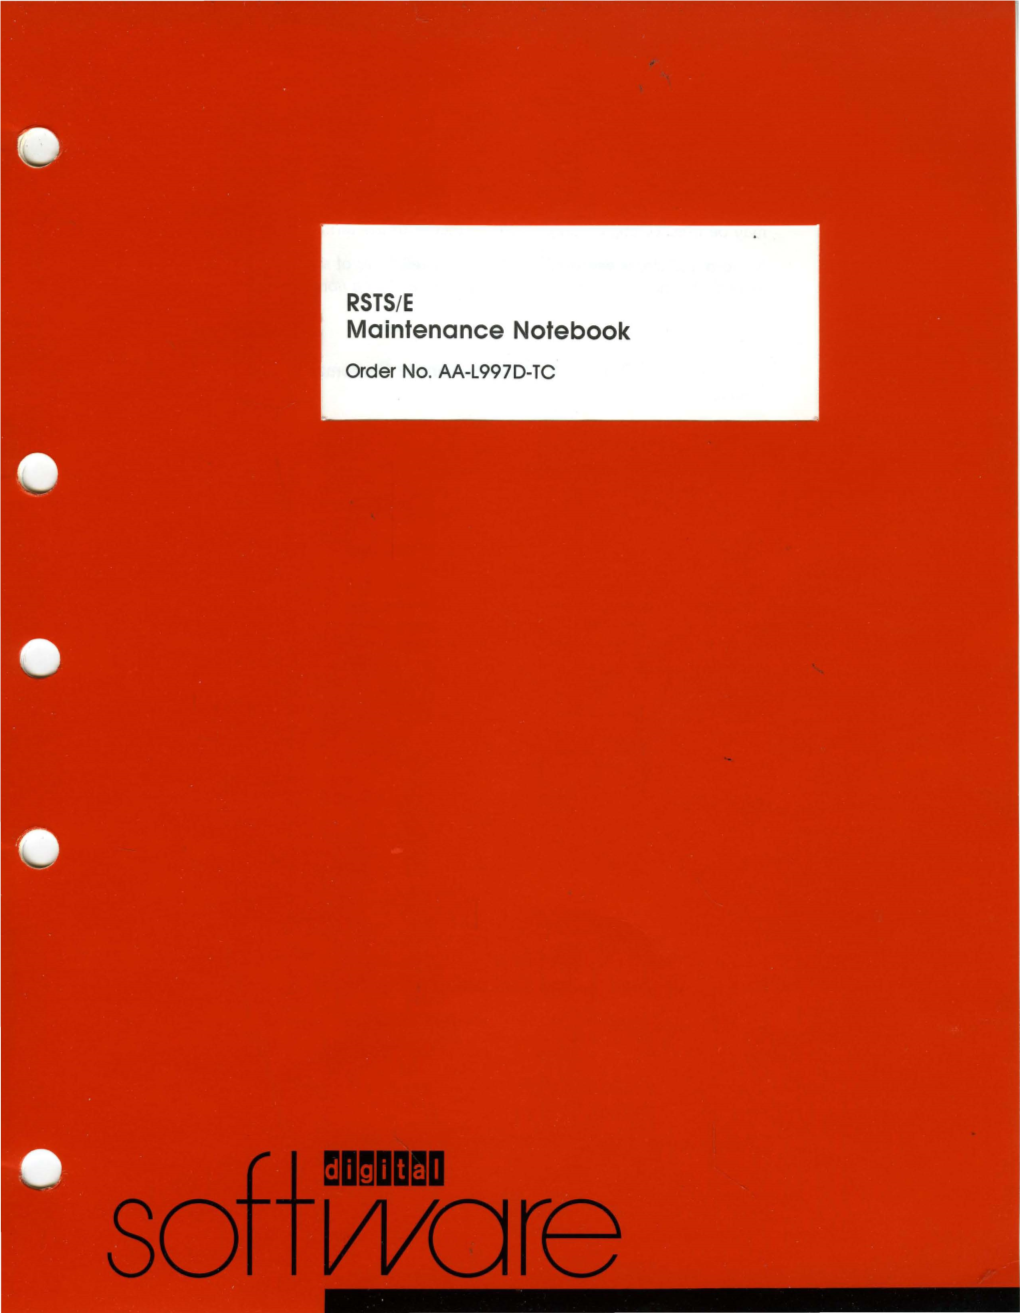 Maintenance Notebook